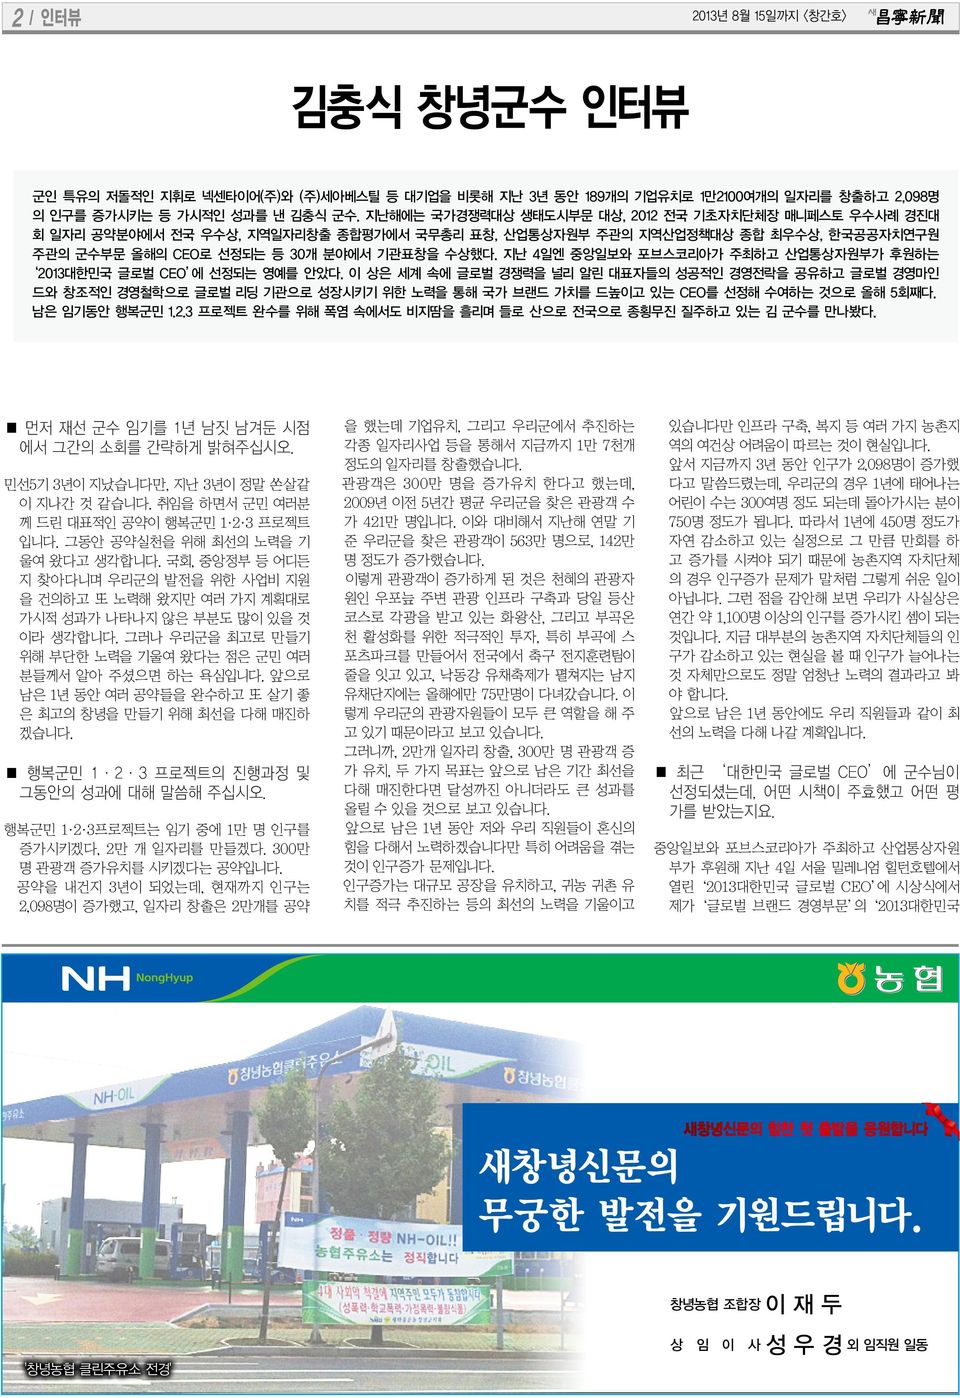 지난 4일엔 중앙일보와 포브스코리아가 주최하고 산업통상자원부가 후원하는 2013대한민국 글로벌 CEO 에 선정되는 영예를 안았다.